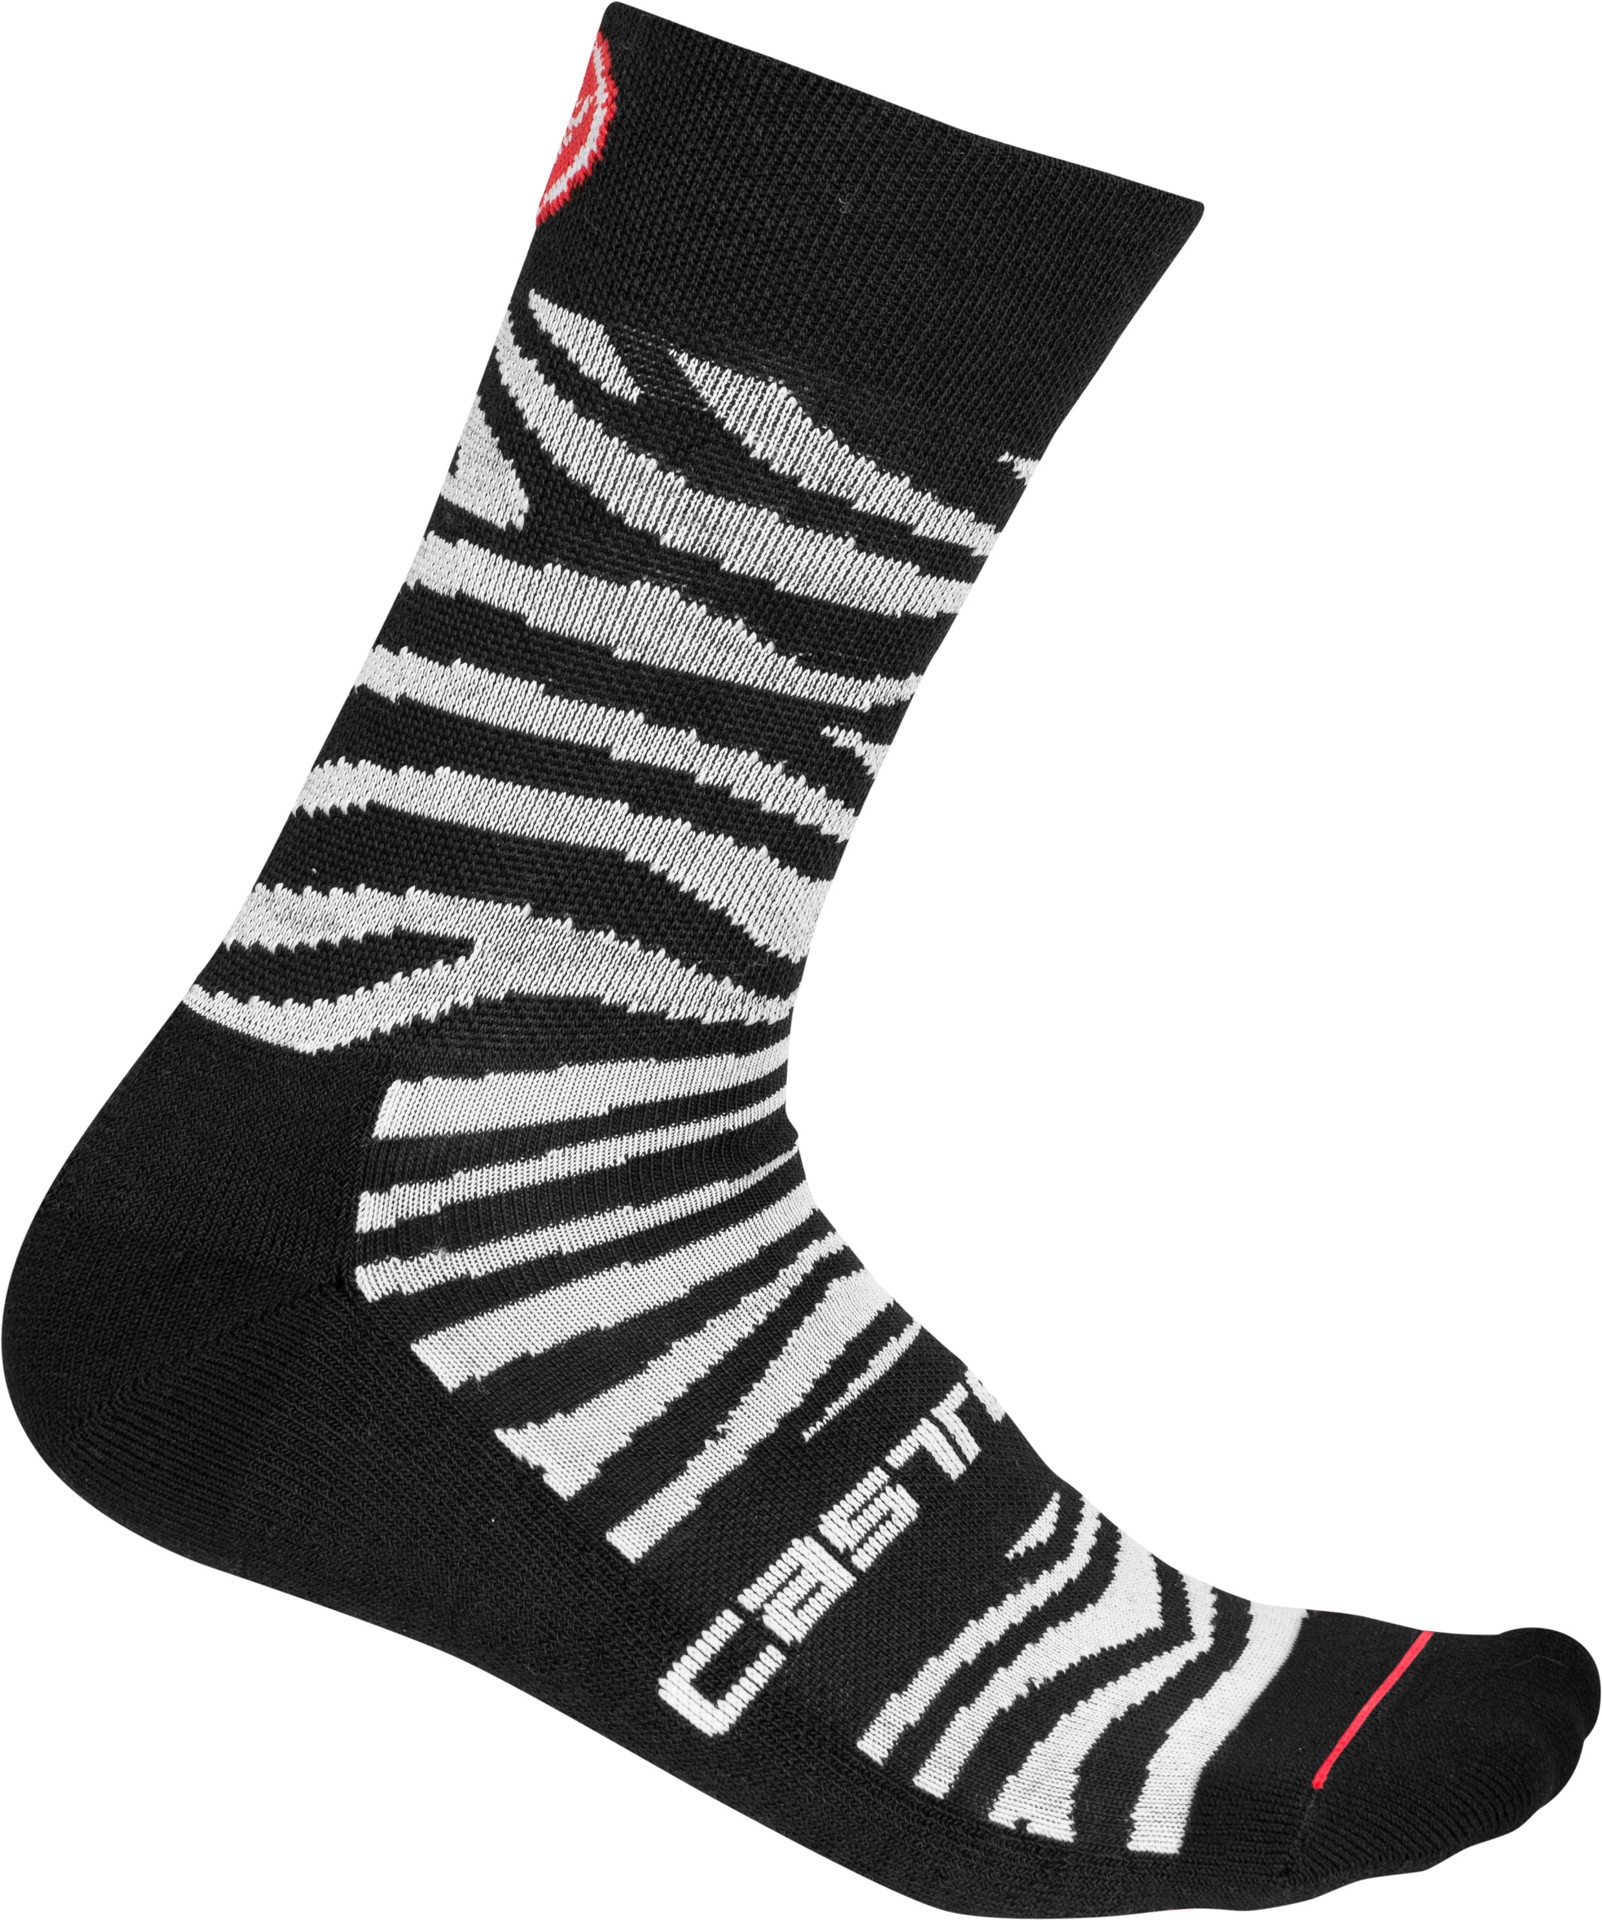 Castelli safari 15 chaussettes de cyclisme femme zebra noir blanc